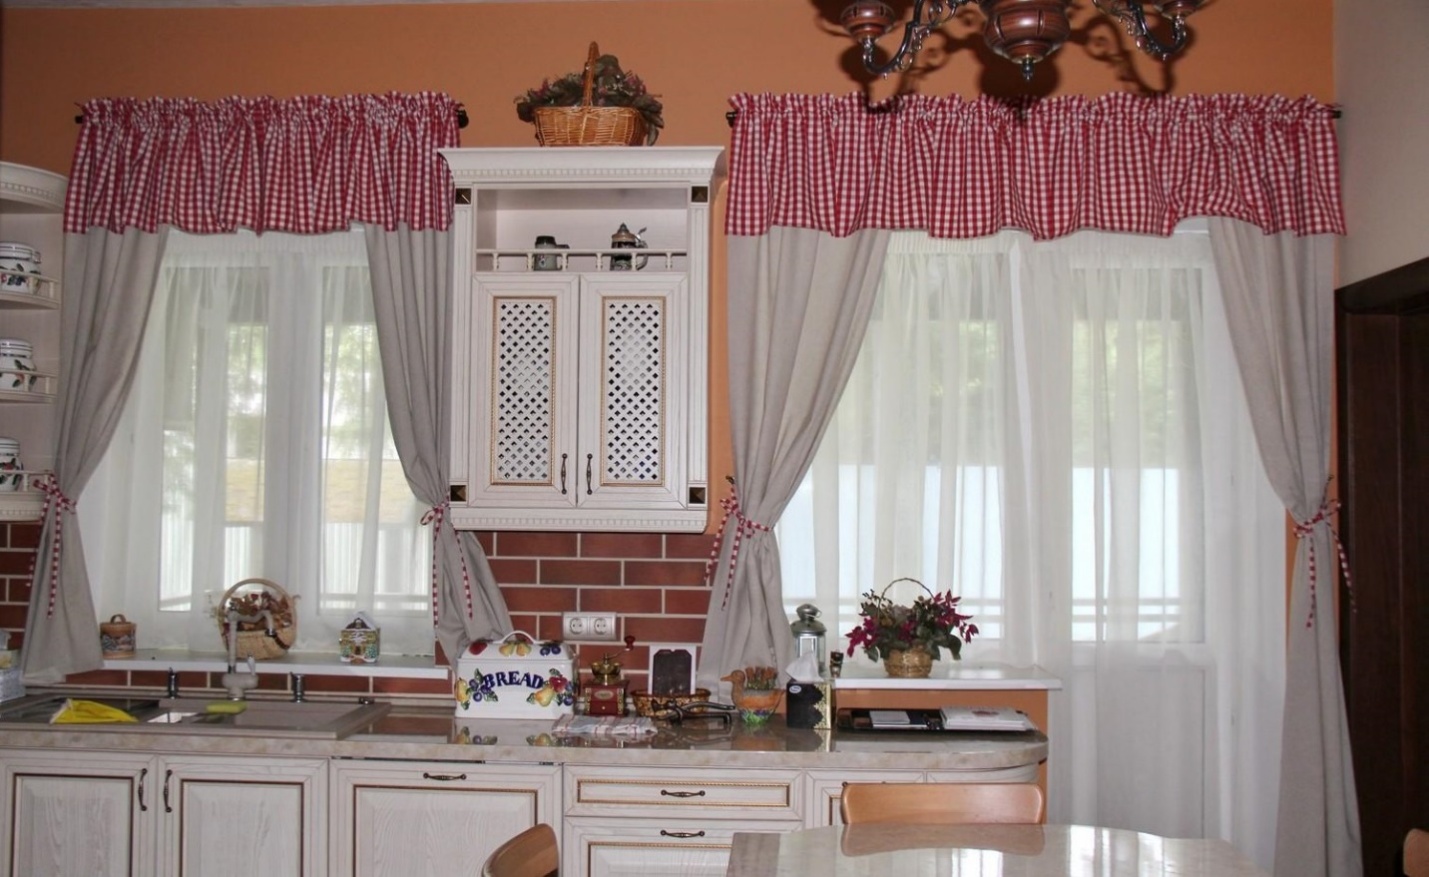 Как сшить шторы на кухню своими руками образцы фото короткие шторы